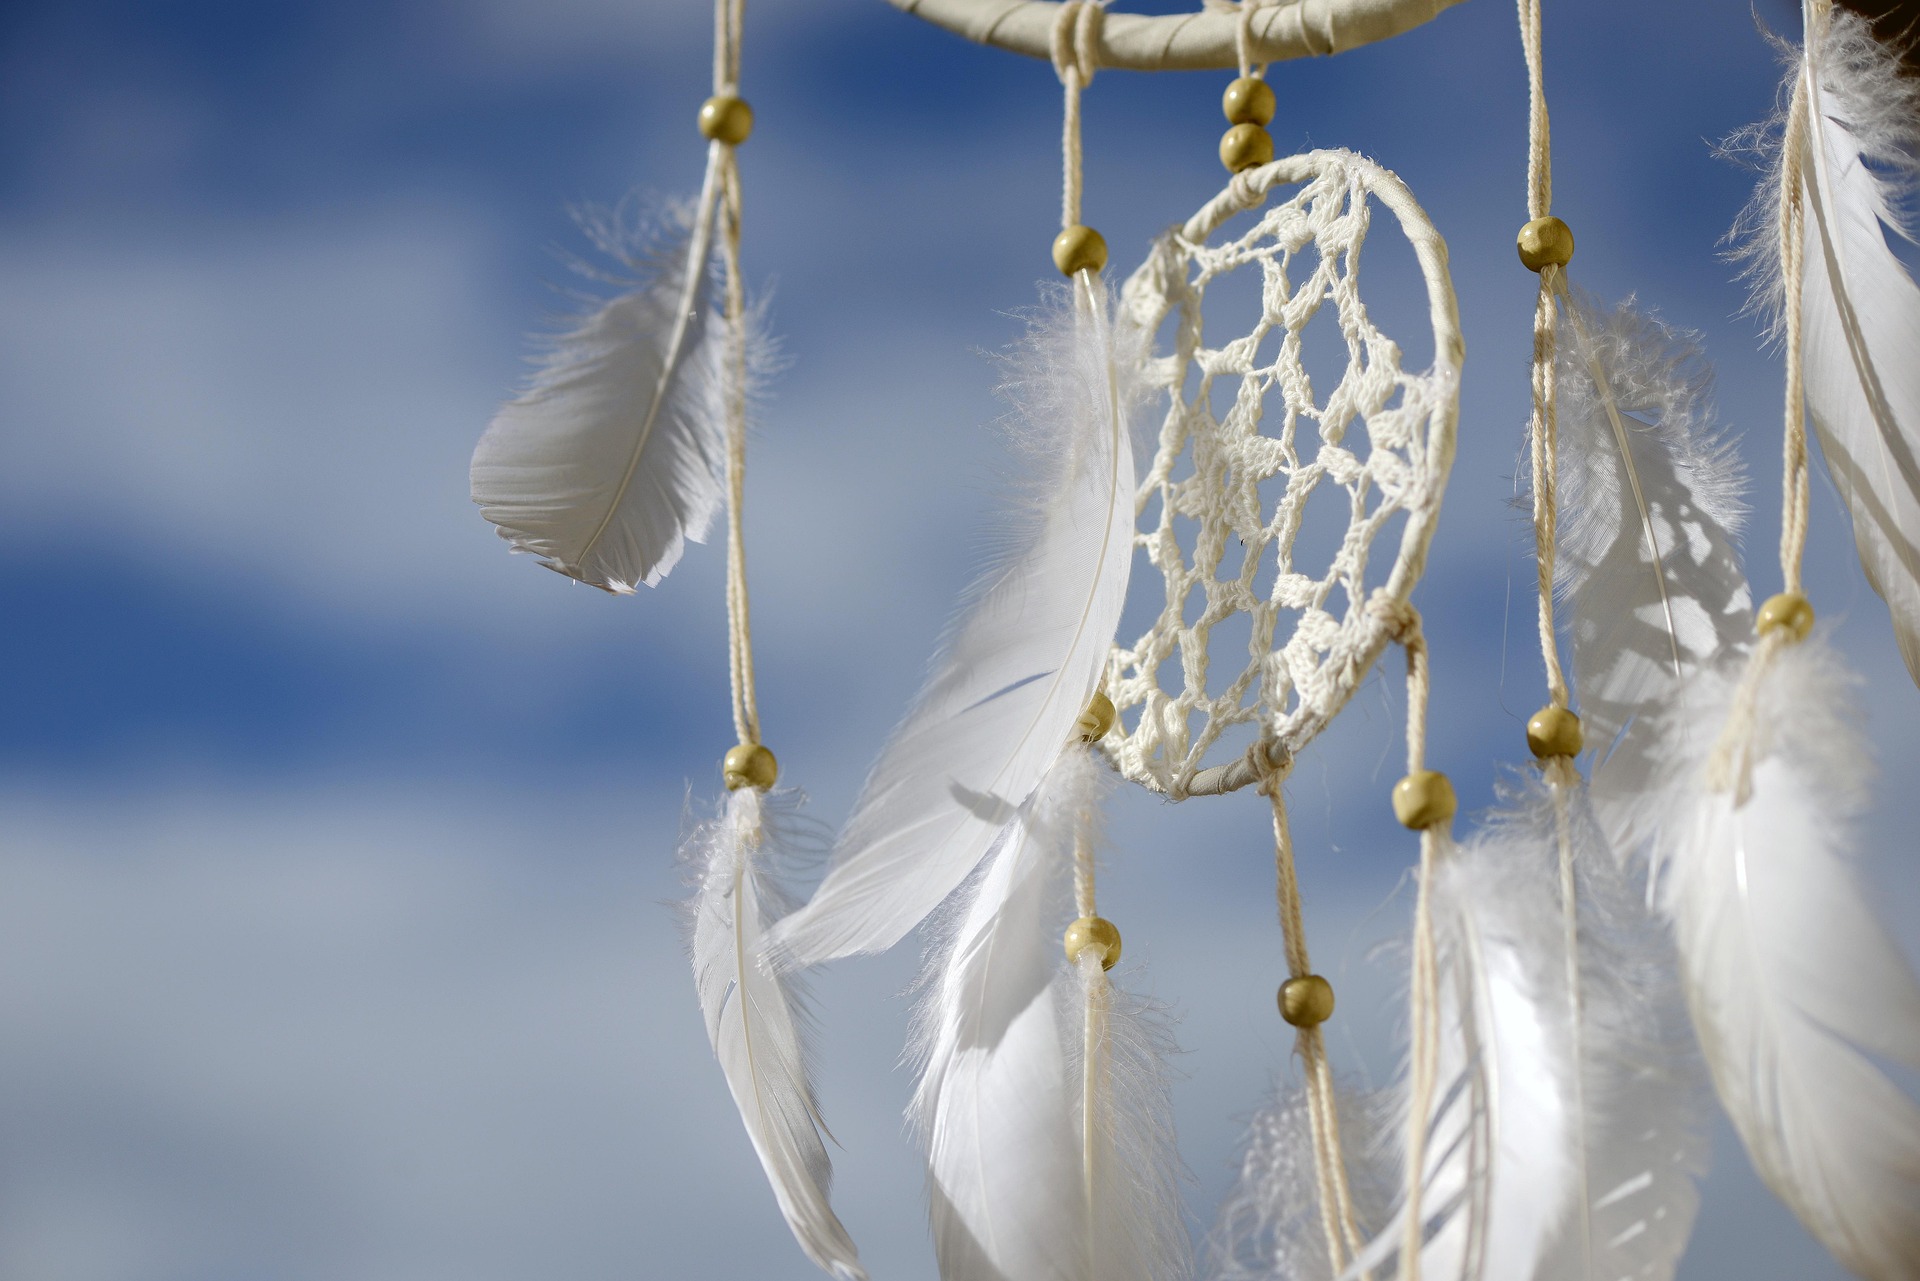 Weißer Traumfänger mit Federn und Perlen, auf blauem Himmel mit Wolken im Hintergrund. Der Ausschnitt zeigt das Netz des Traumfängers.